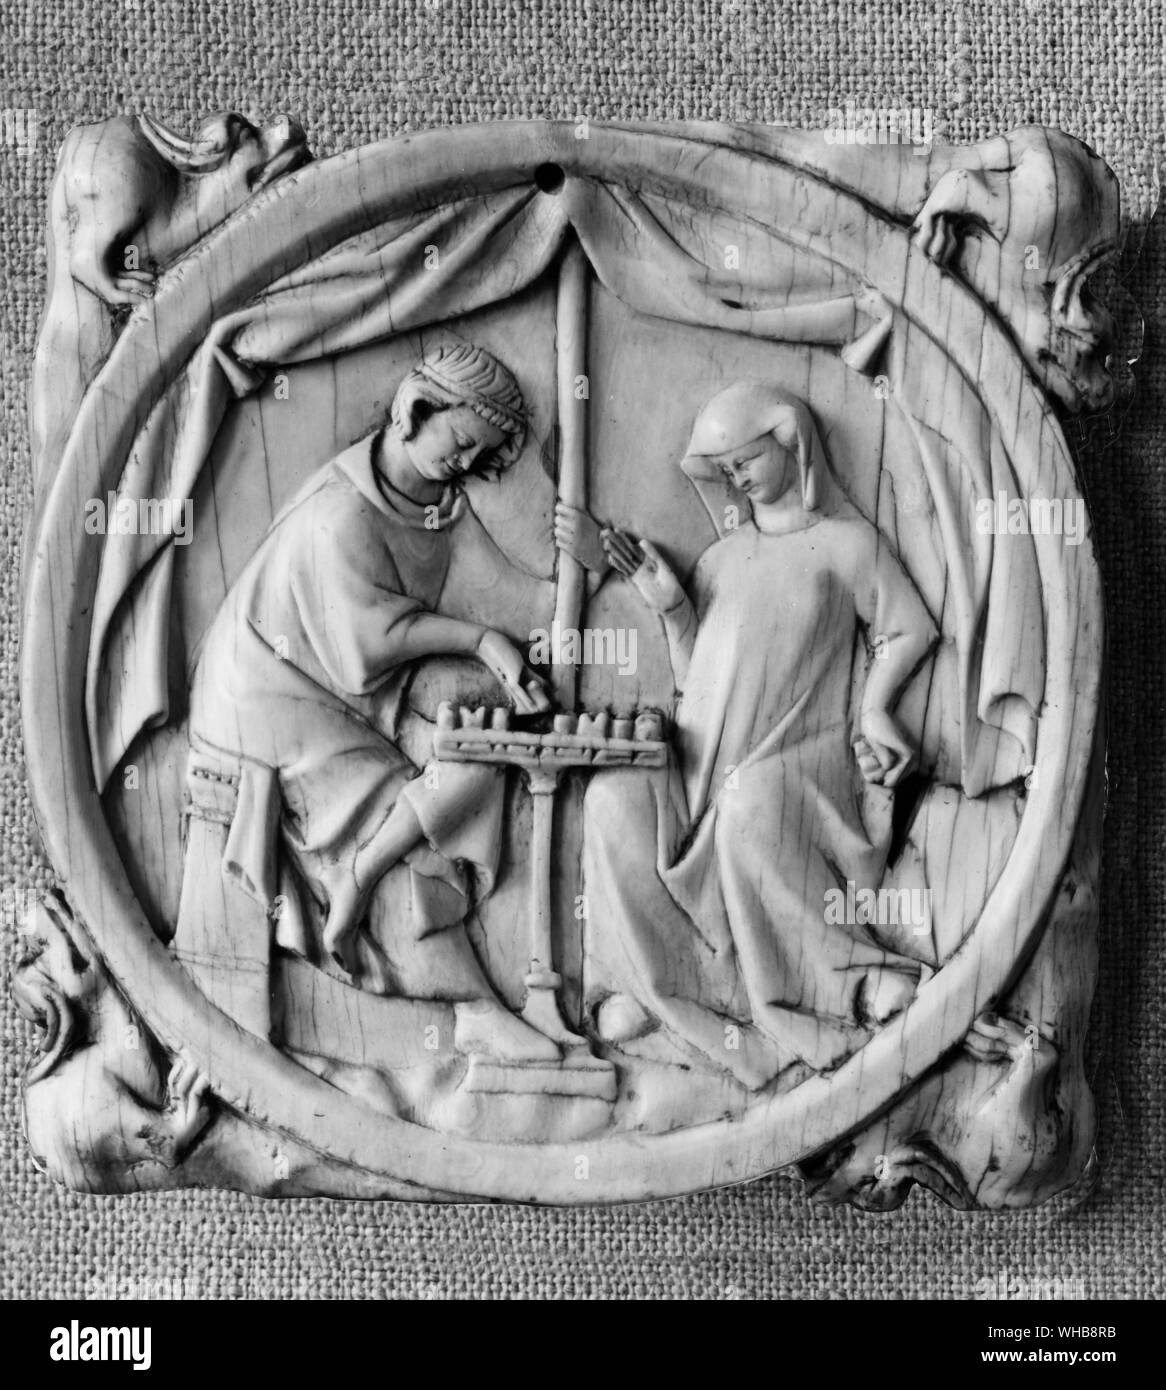 La vida cotidiana - tallados de marfil , Francés , caso de espejo que muestra un juego de ajedrez. Escena medieval. Foto de stock